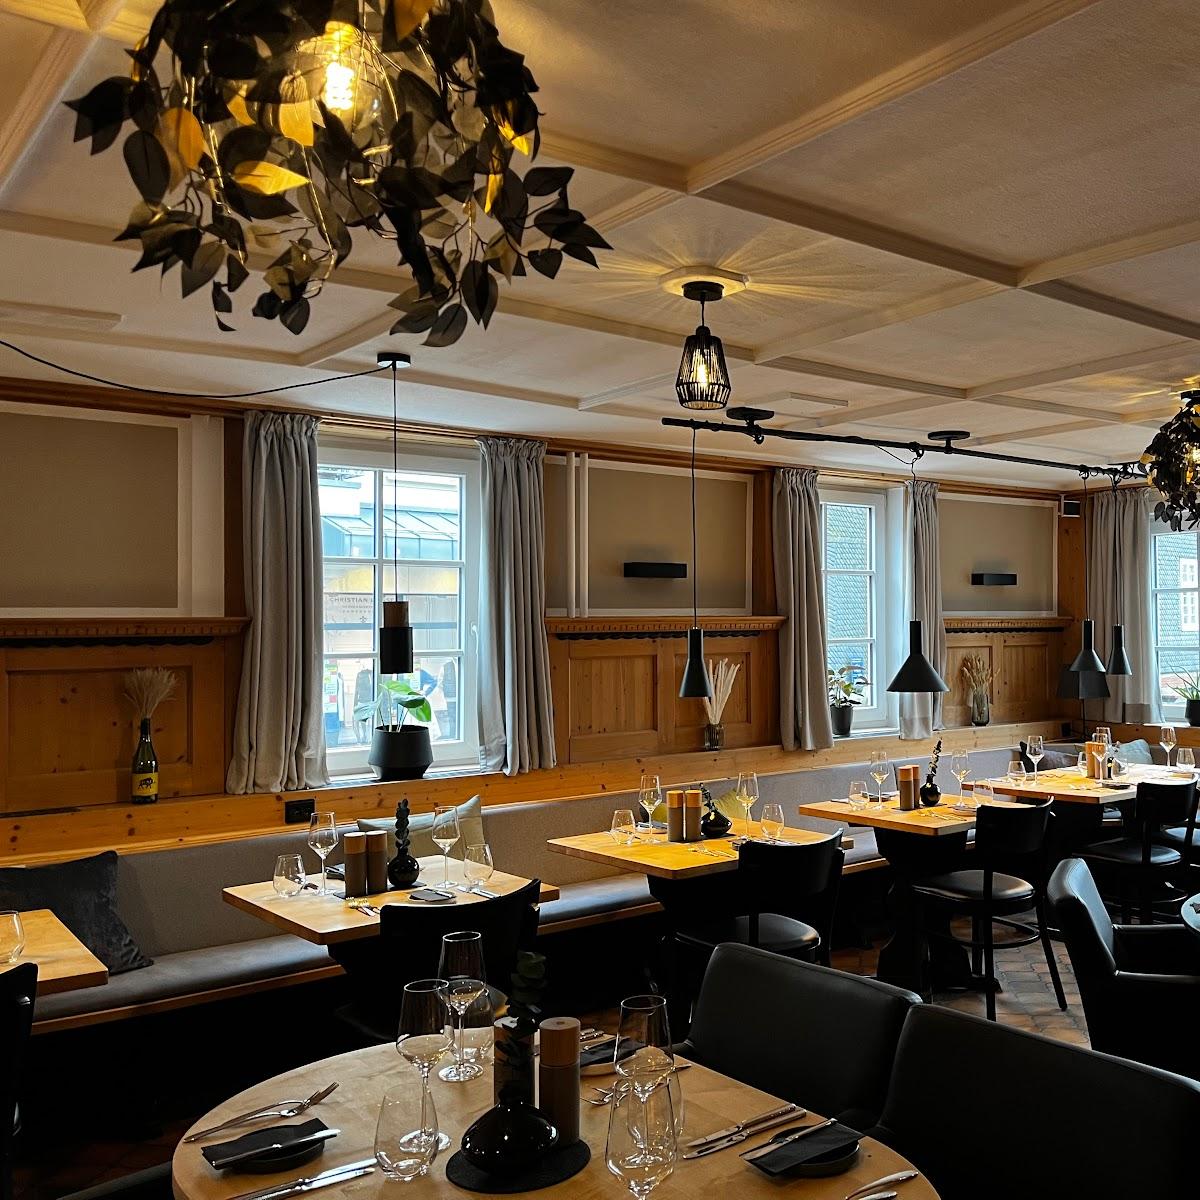 Restaurant "Jägerhof I Dine & Wine" in Brilon